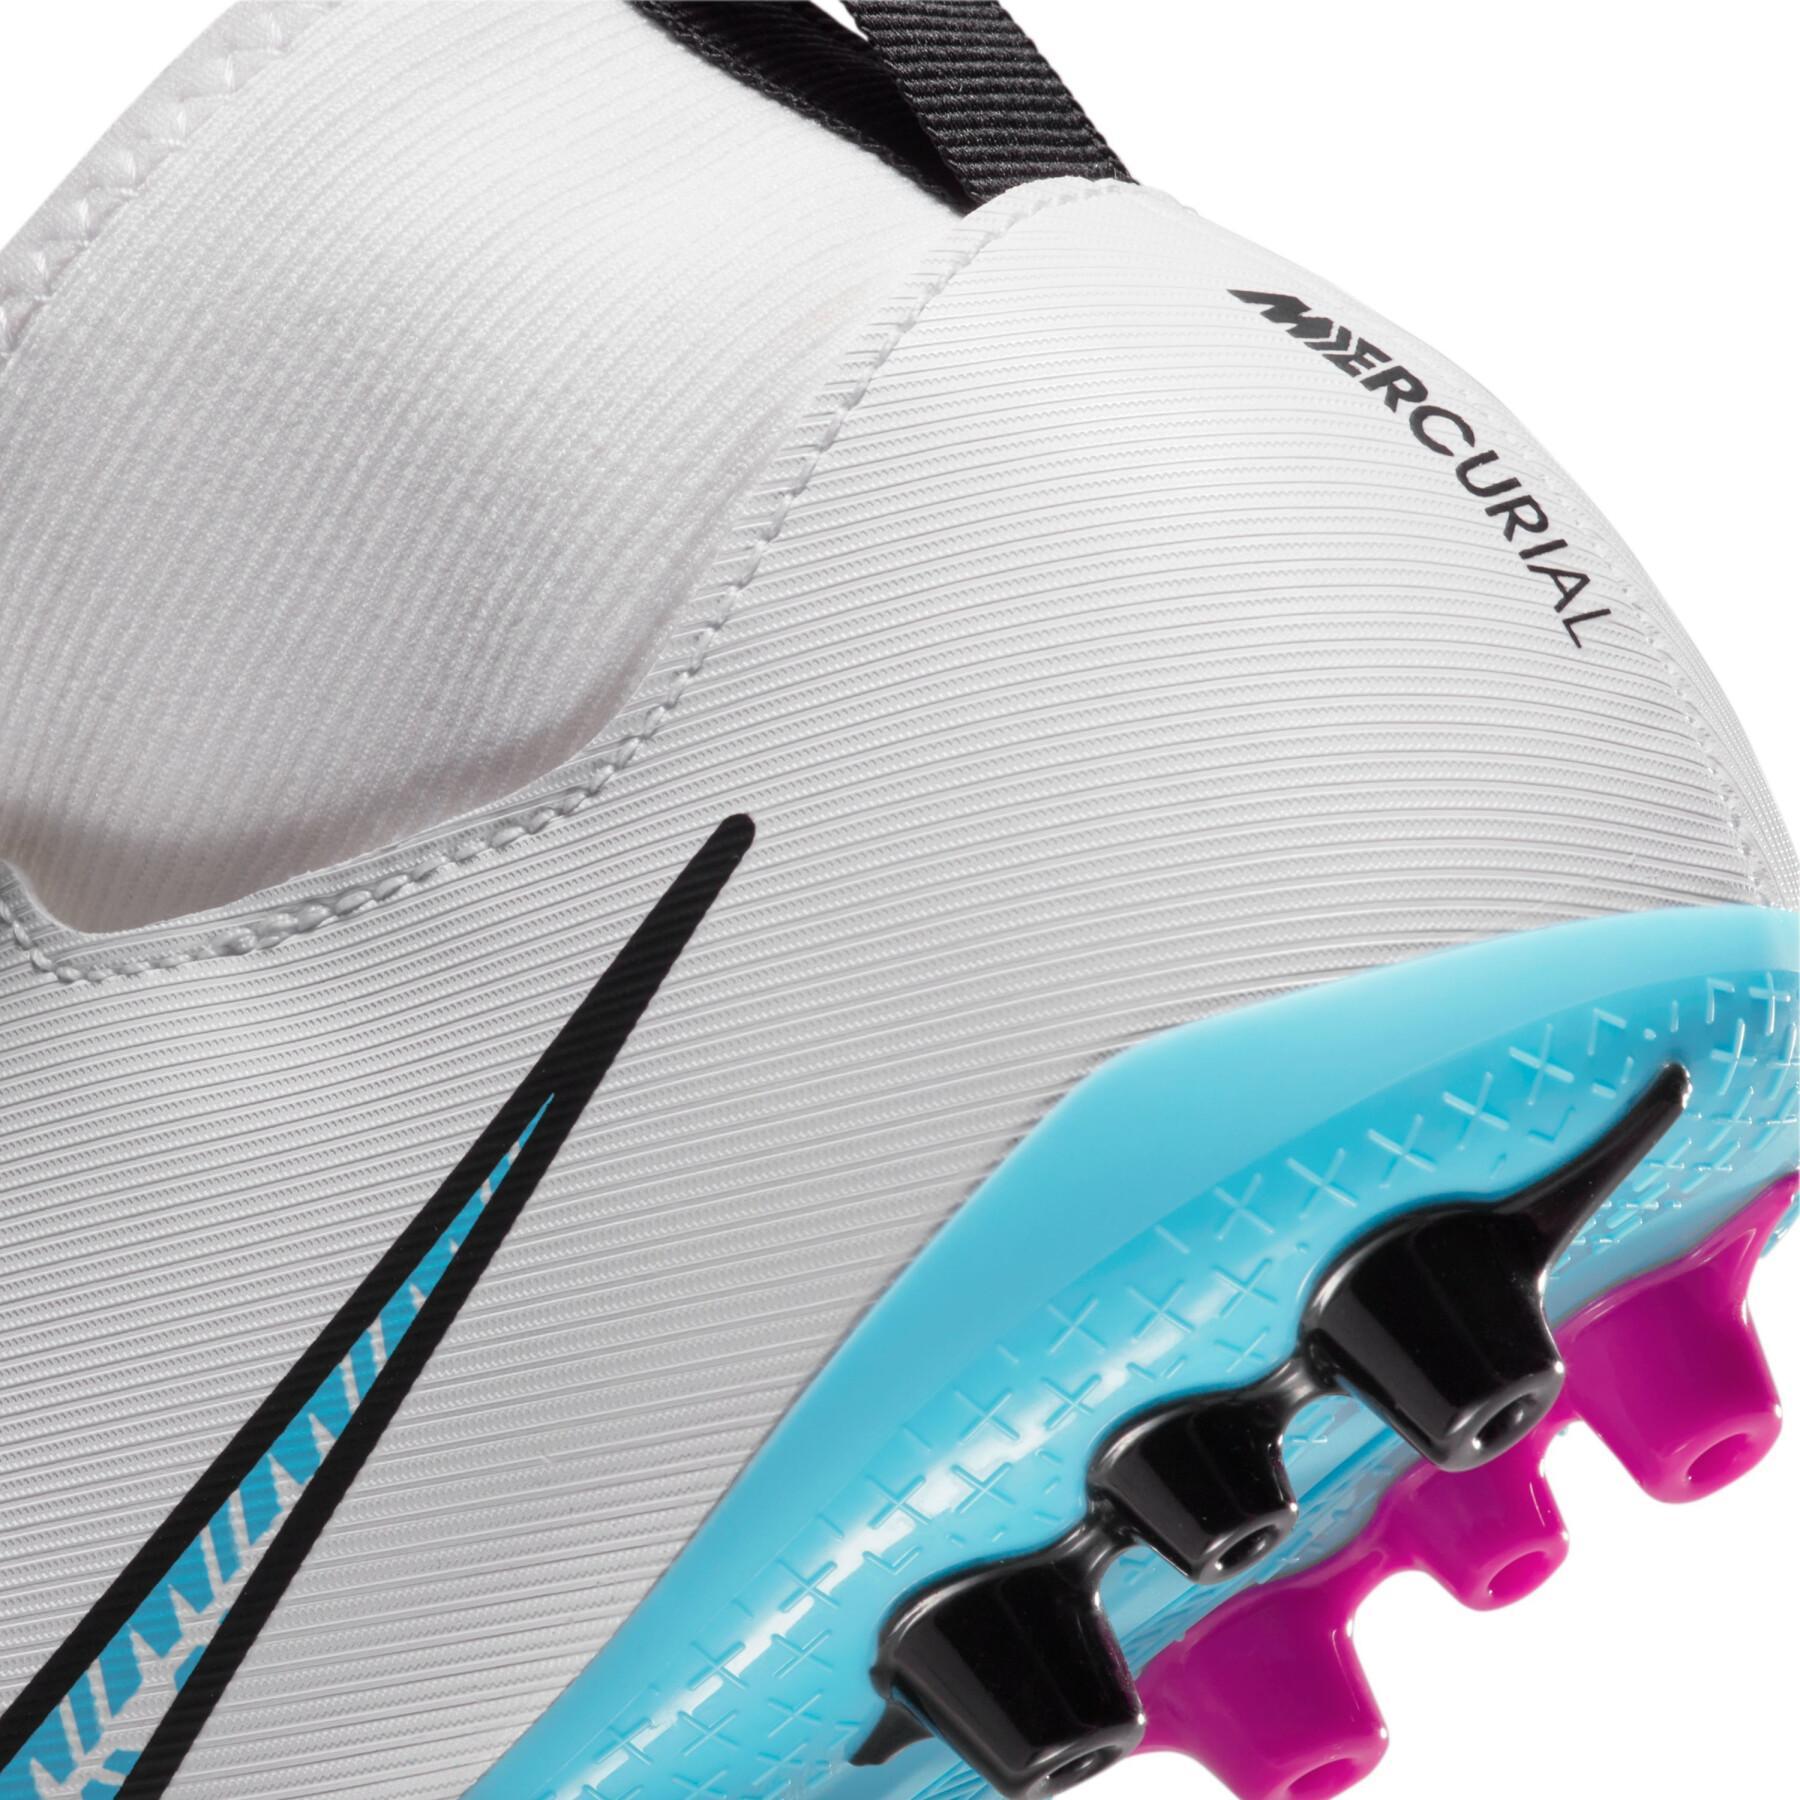 Sapatos de futebol para crianças Nike Zoom Mercurial Superfly 9 Academy AG - Blast Pack